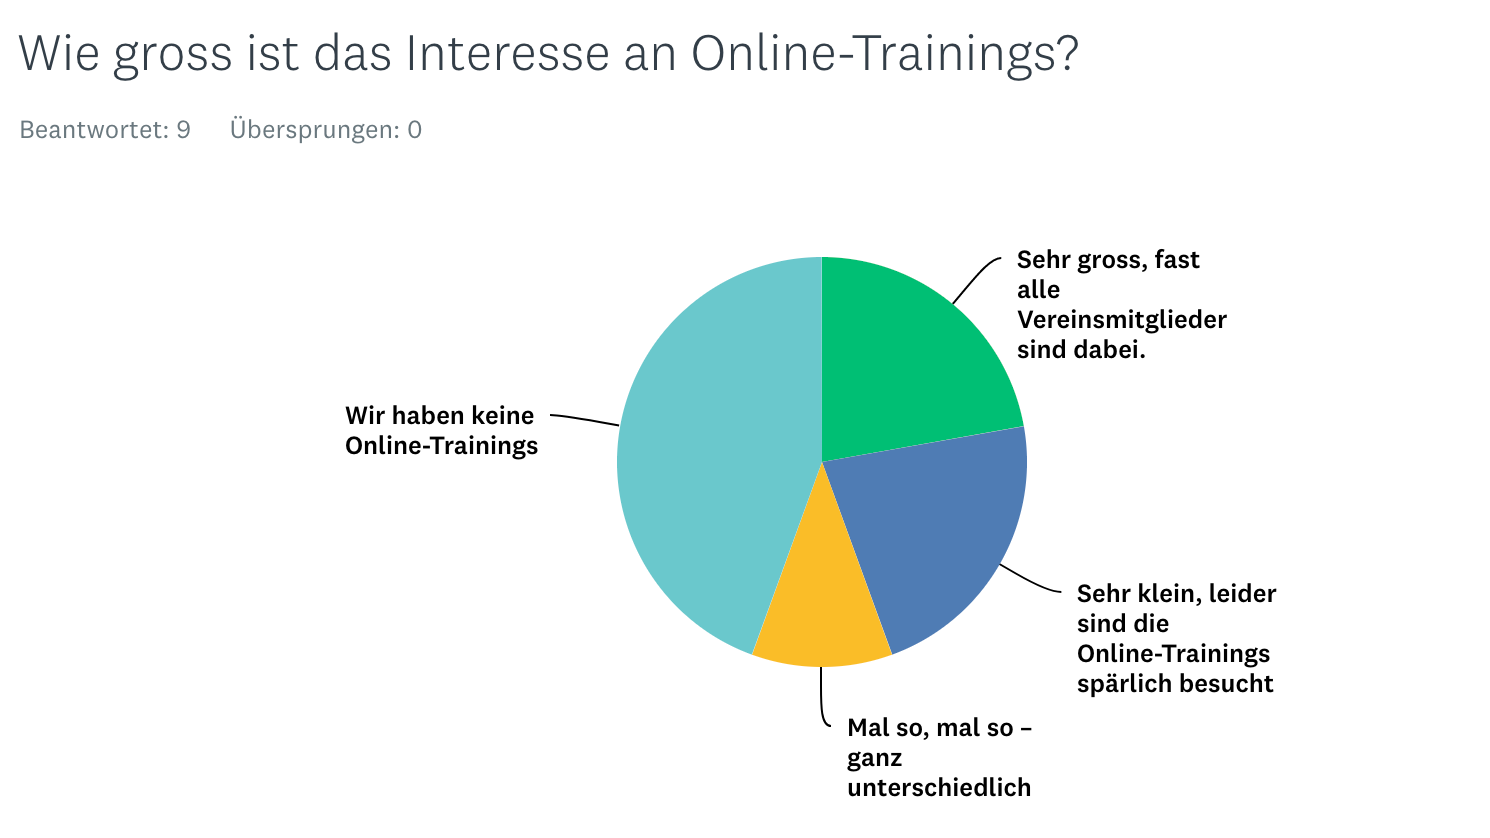 Das Interesse an Online-Trainings ist unterschiedlich gross.